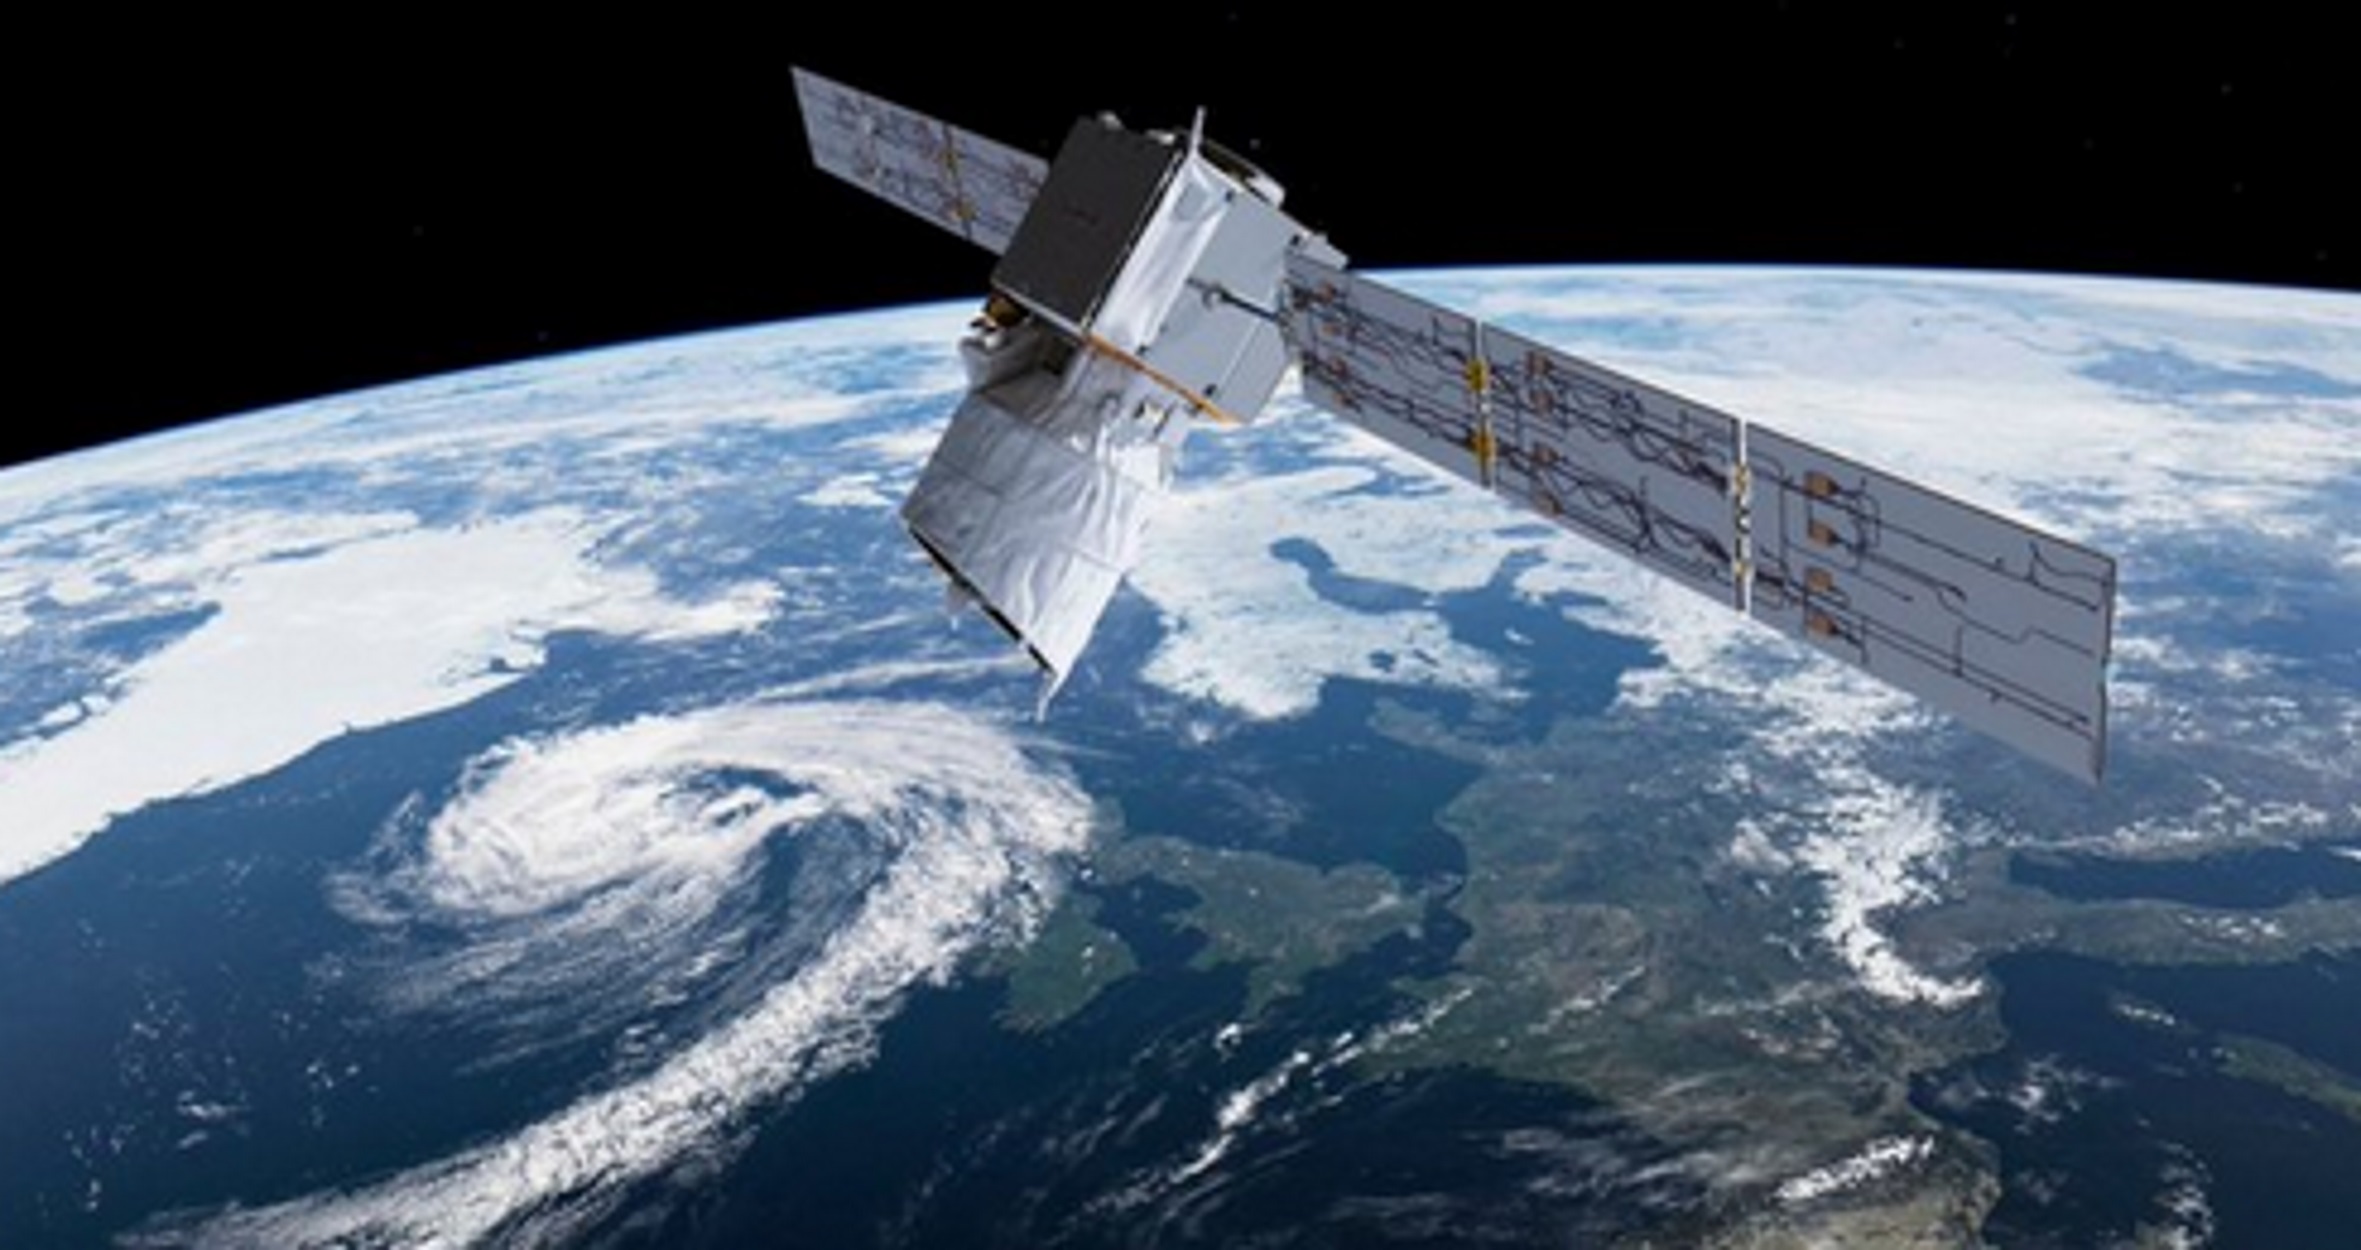 Ρωσικός δορυφόρος τηλεπικοινωνιών υπέστη ζημιά πιθανότατα από «διαστημικό σκουπίδι» (βίντεο)